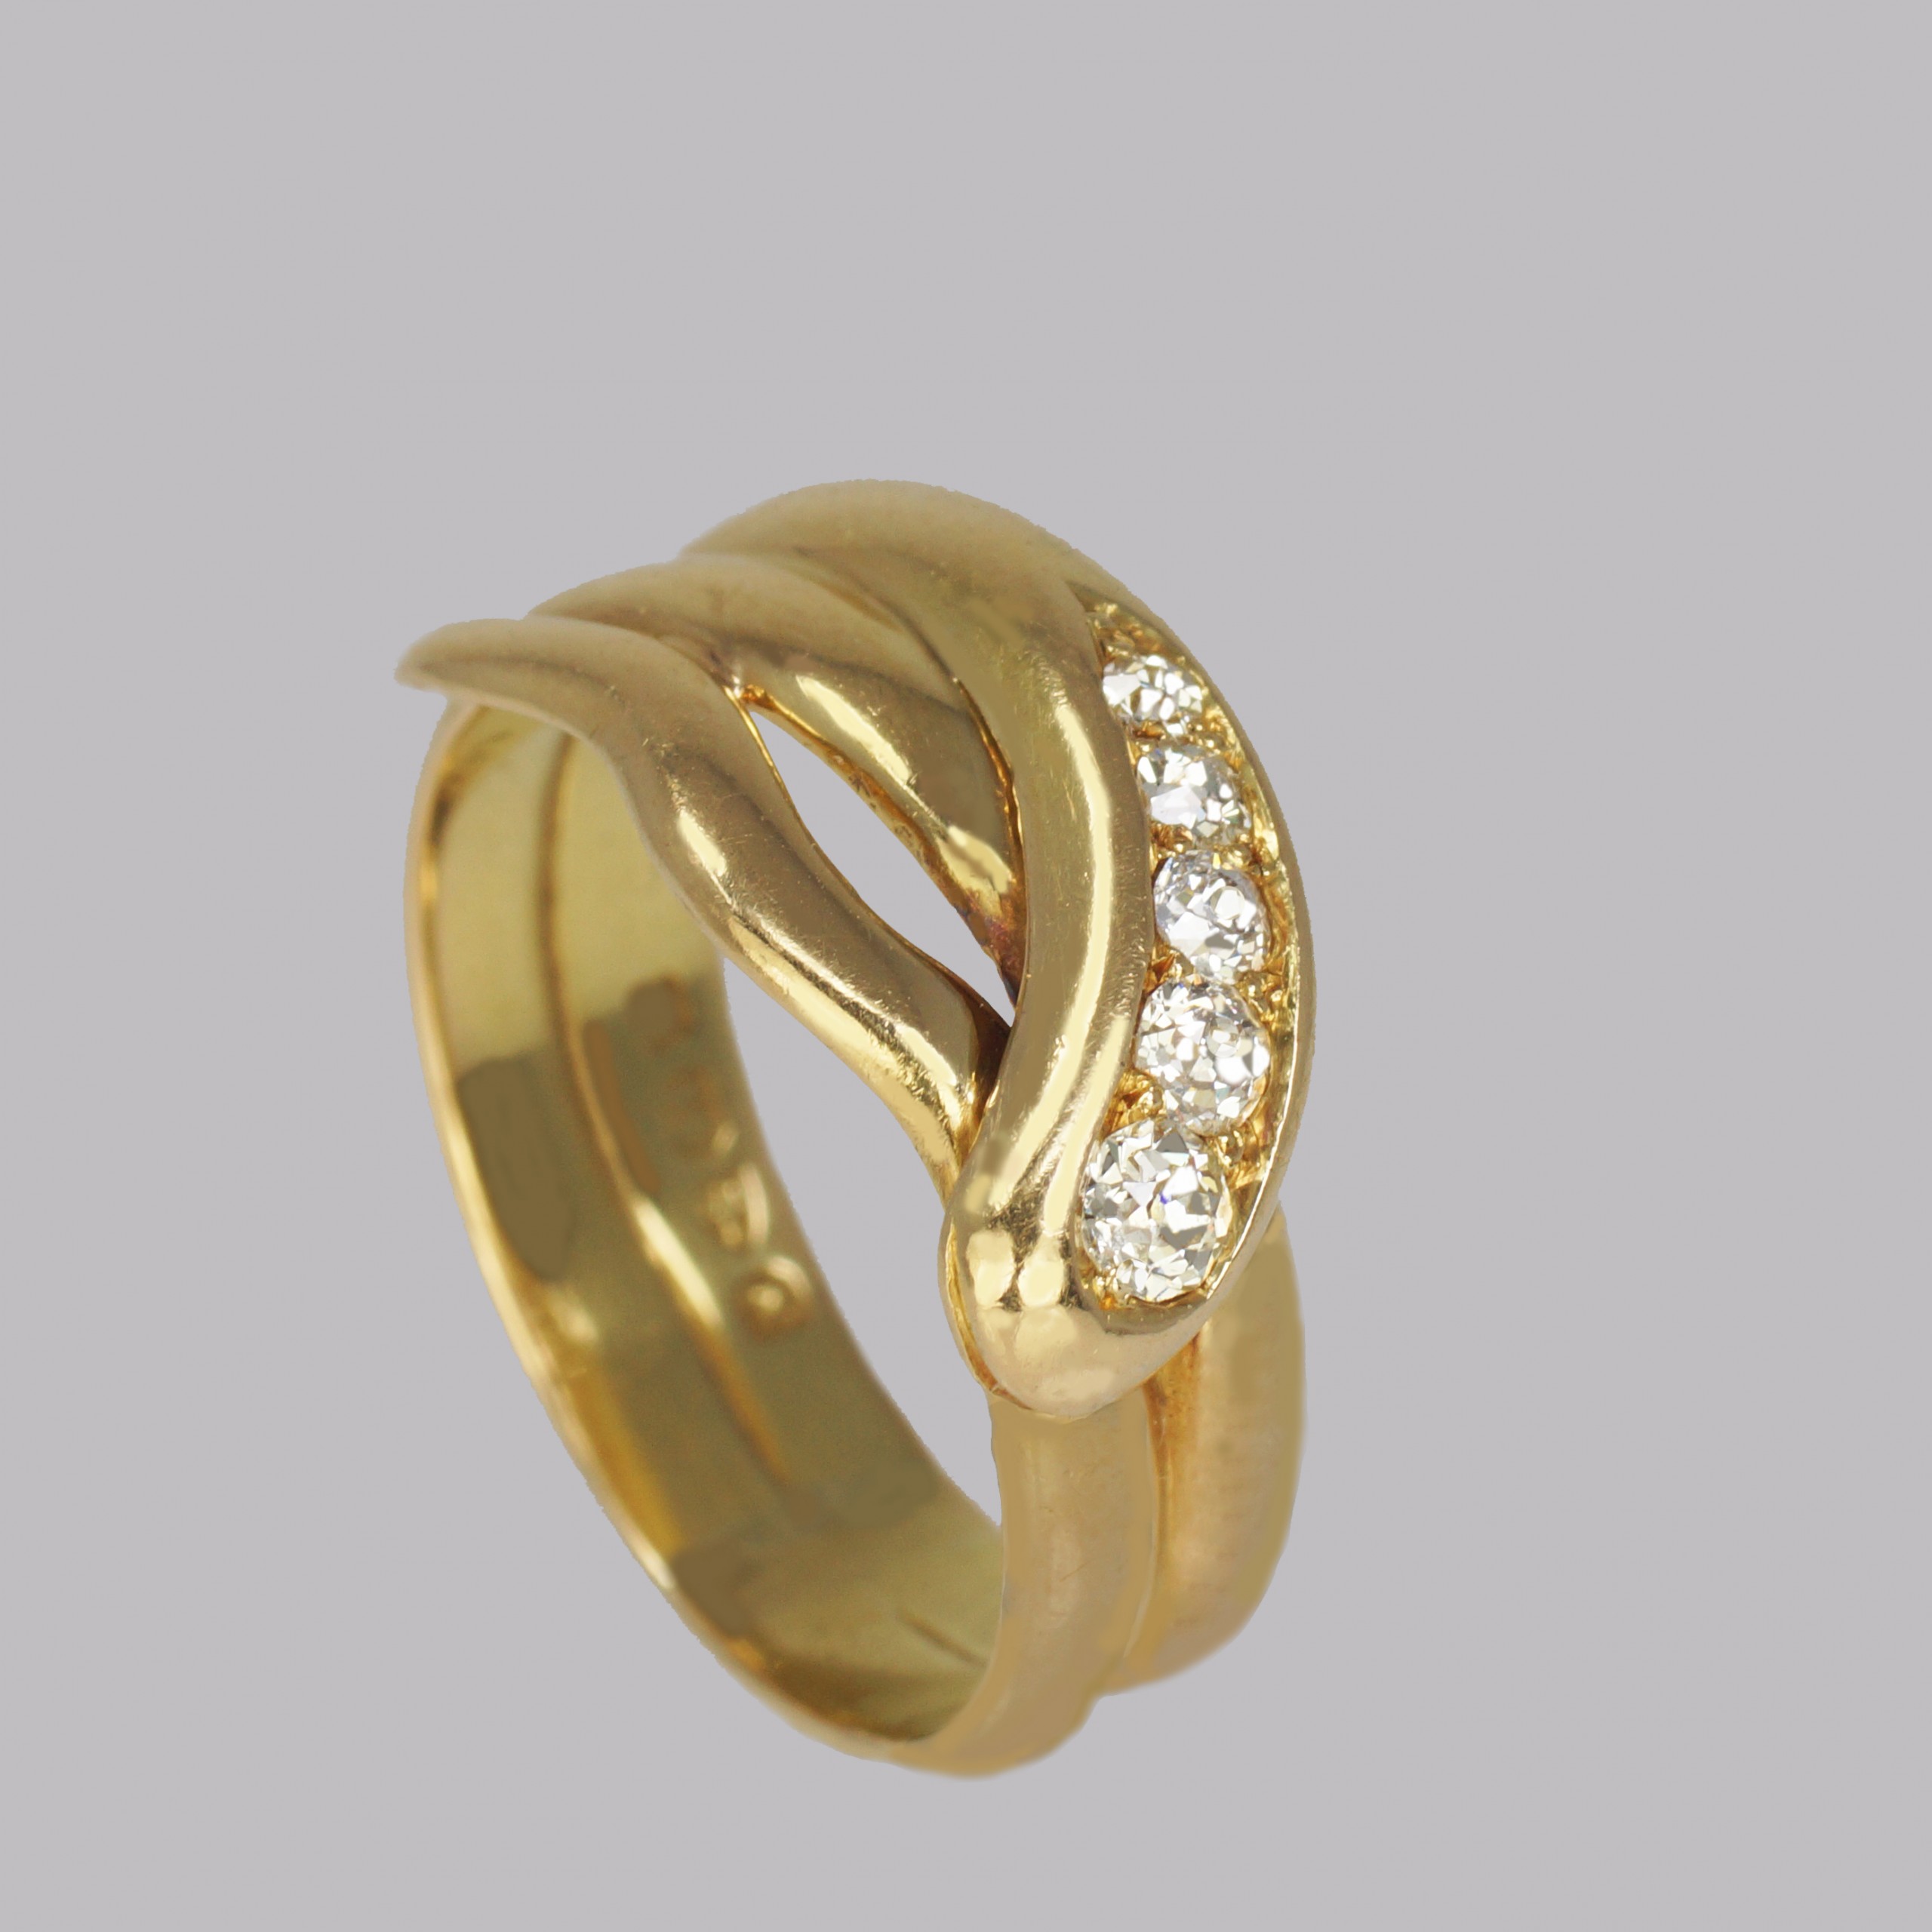 Victorian Diamond Snake Ring Chester 1896 - The Chelsea Bijouterie